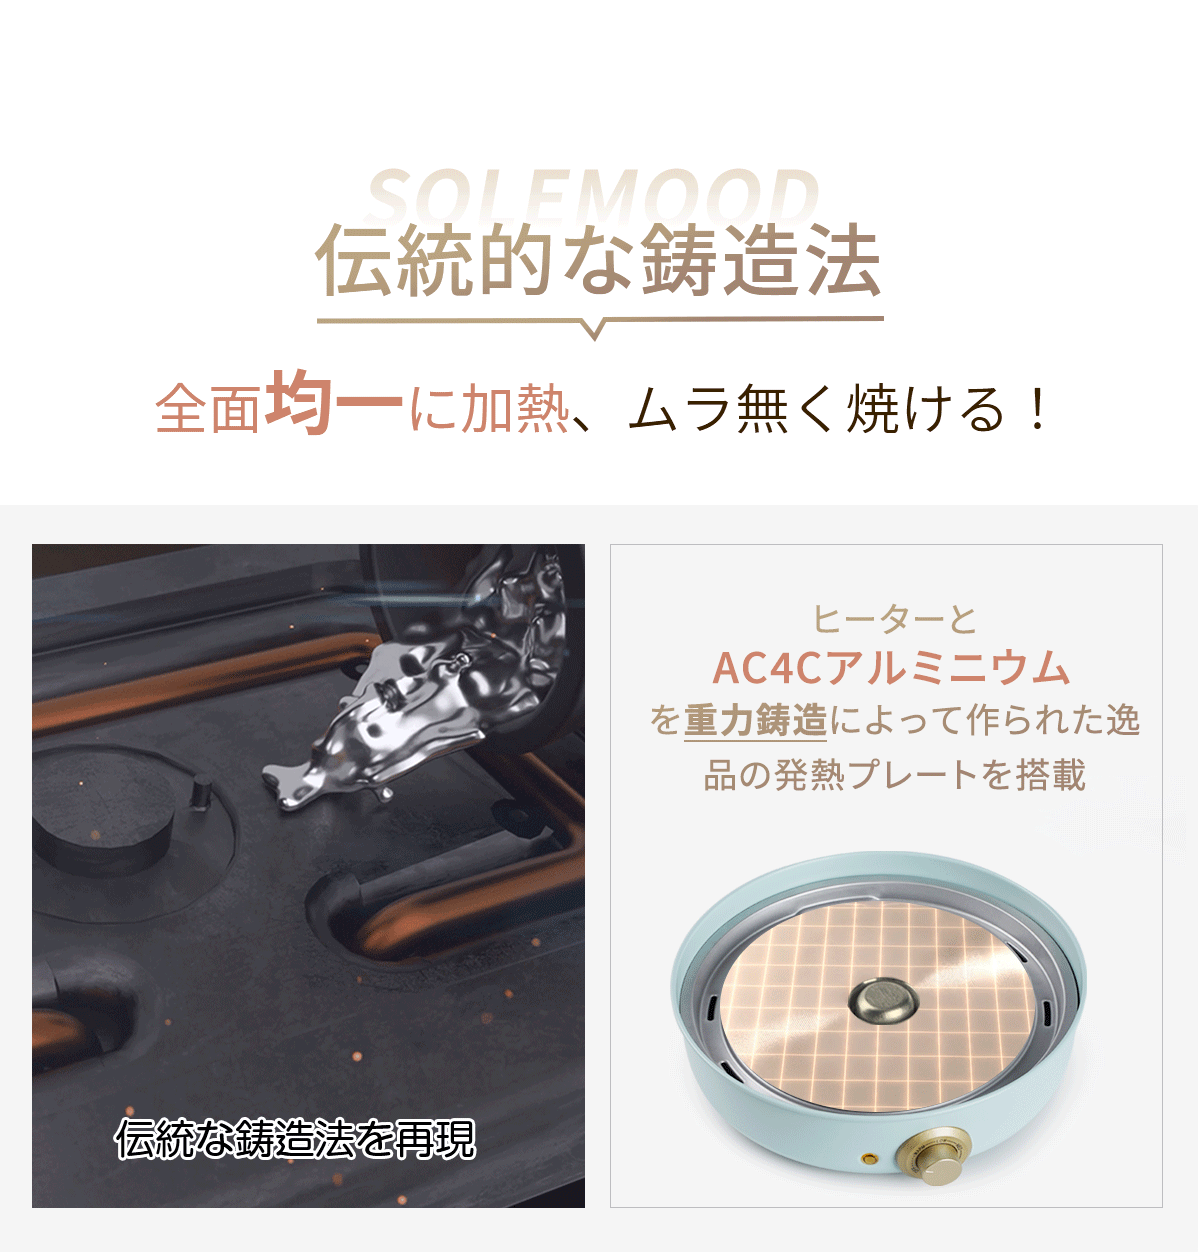 伝統的な鋳造法で作る、発熱均一なクッキングポット SOLEMOOD WL-G301